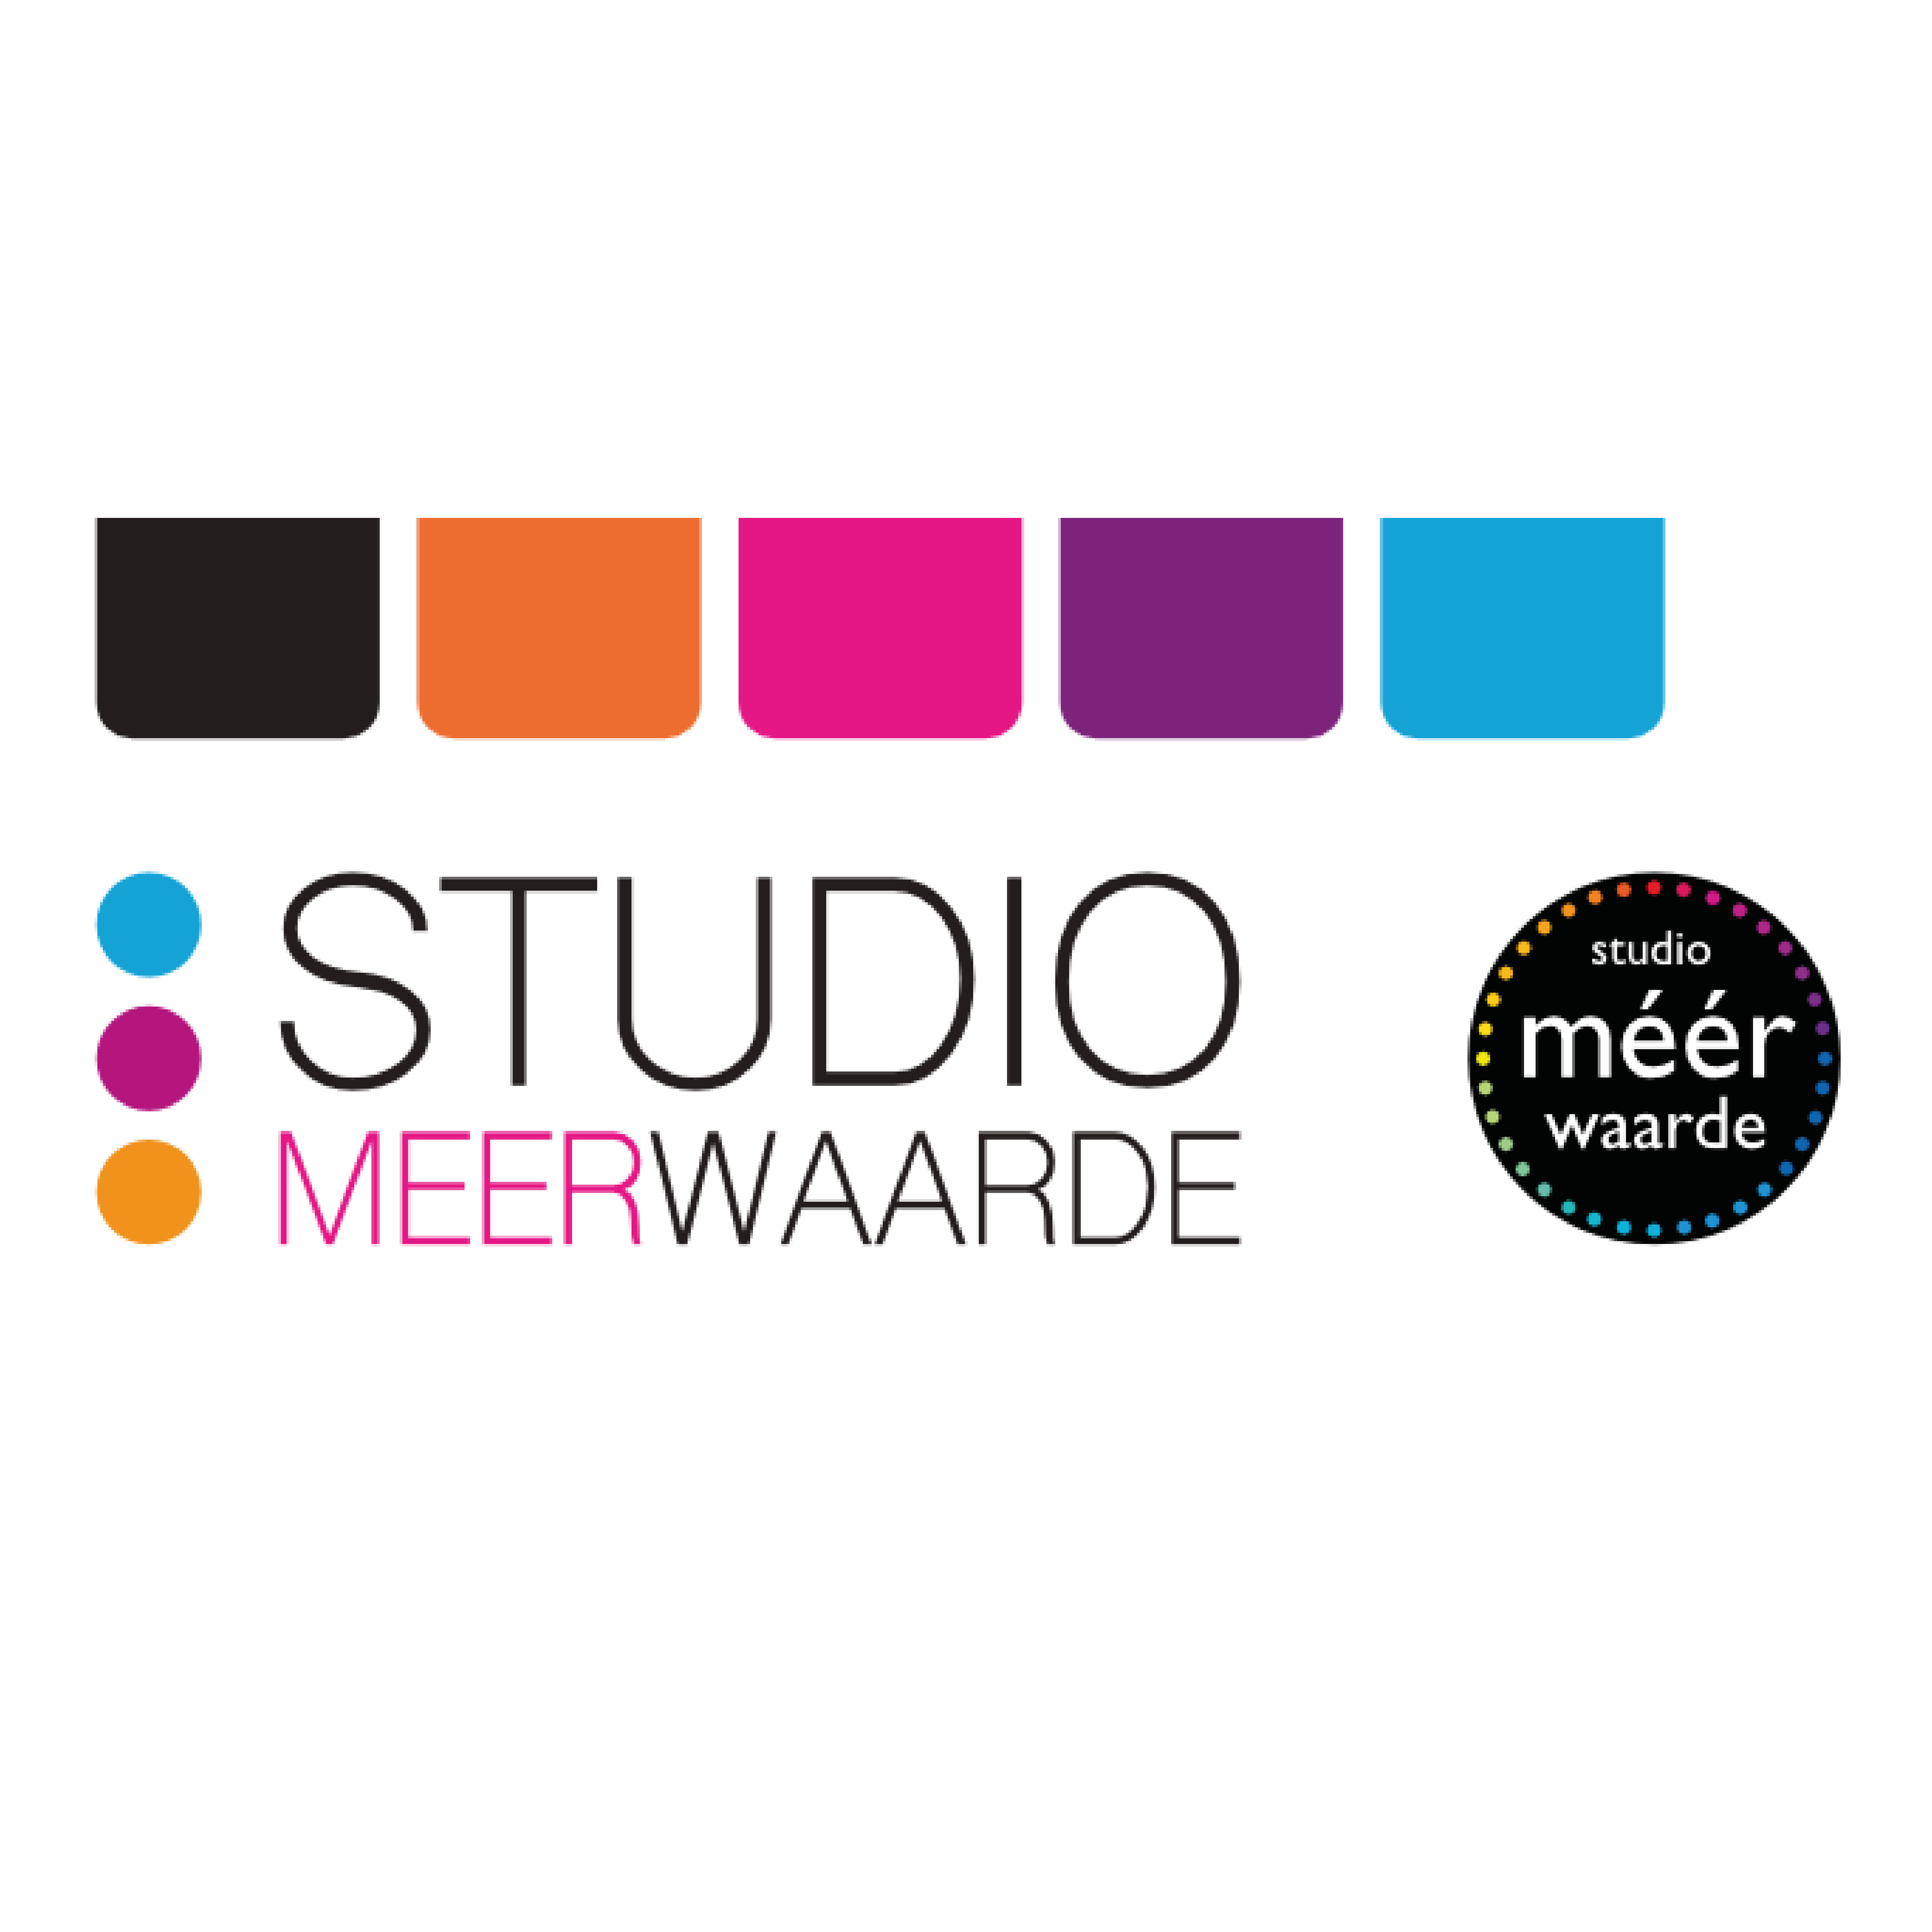 Studio MeerWaarde